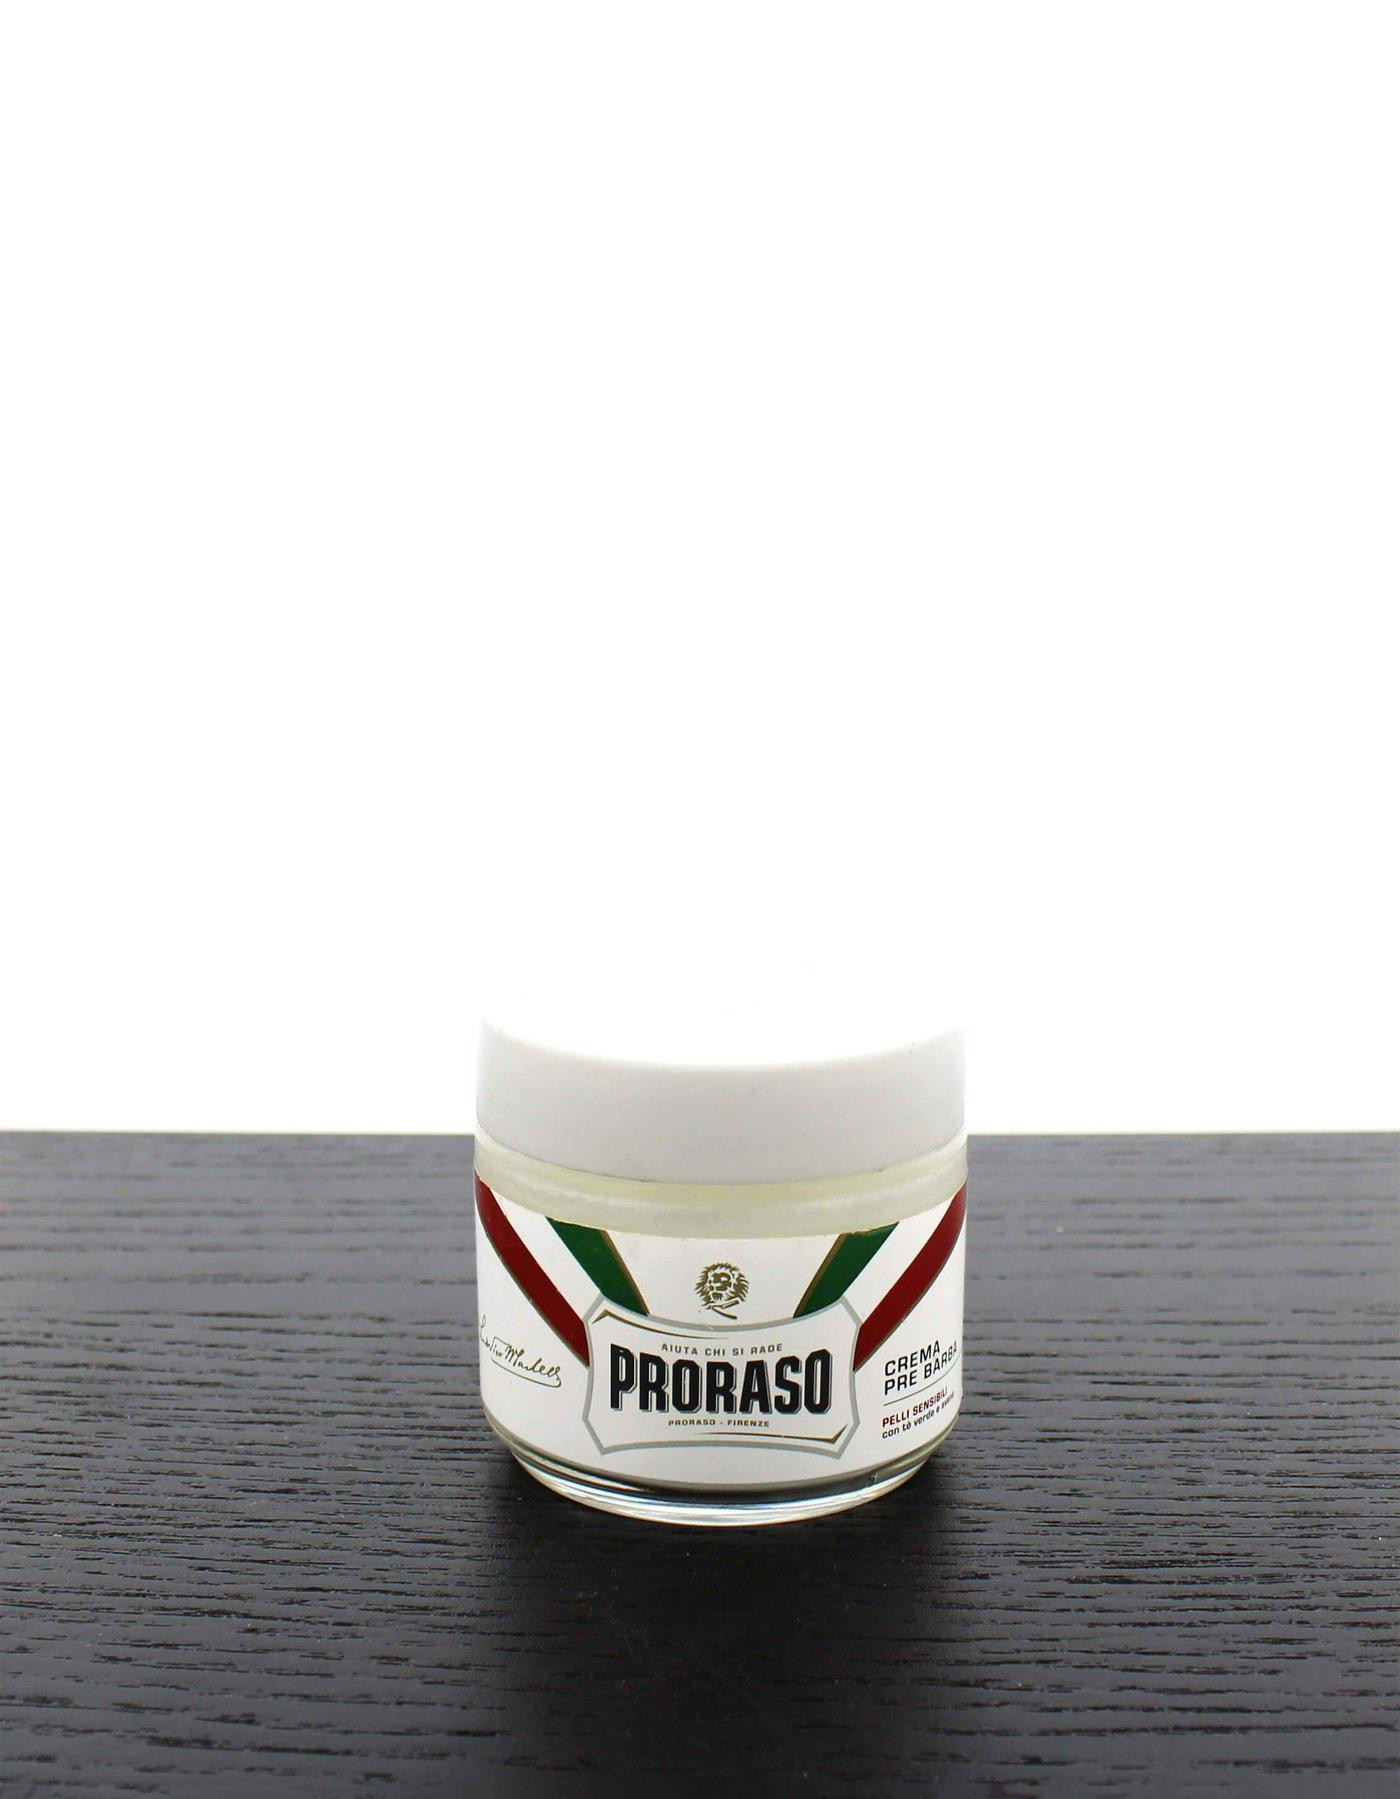 Proraso Pre & Post Cream, Green Tea & Oat, 100ml